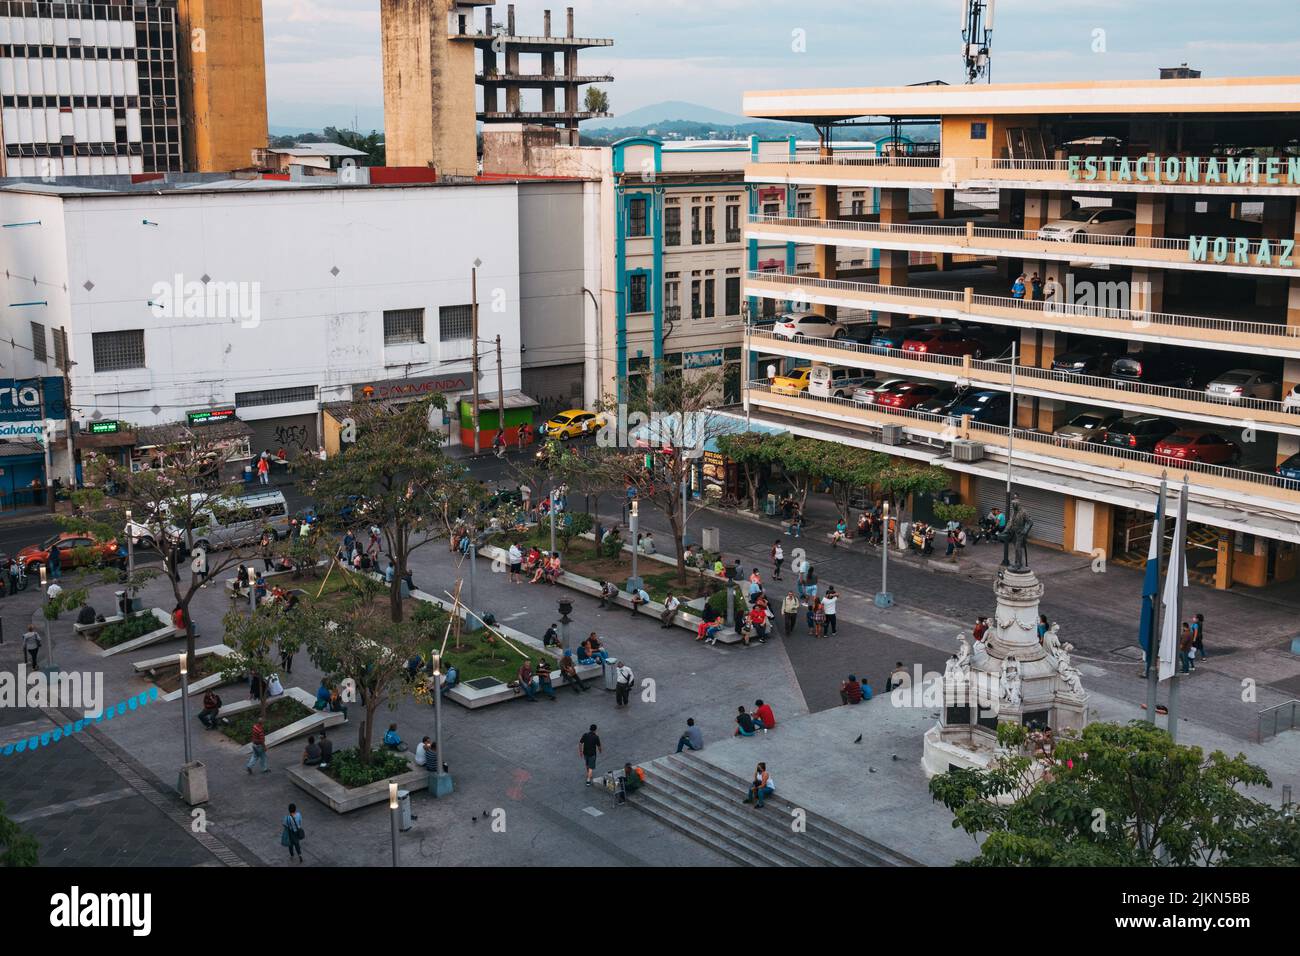 Con vistas a la Plaza Morazán, San Salvador. Un aparcamiento de varios pisos domina la vista. Foto de stock